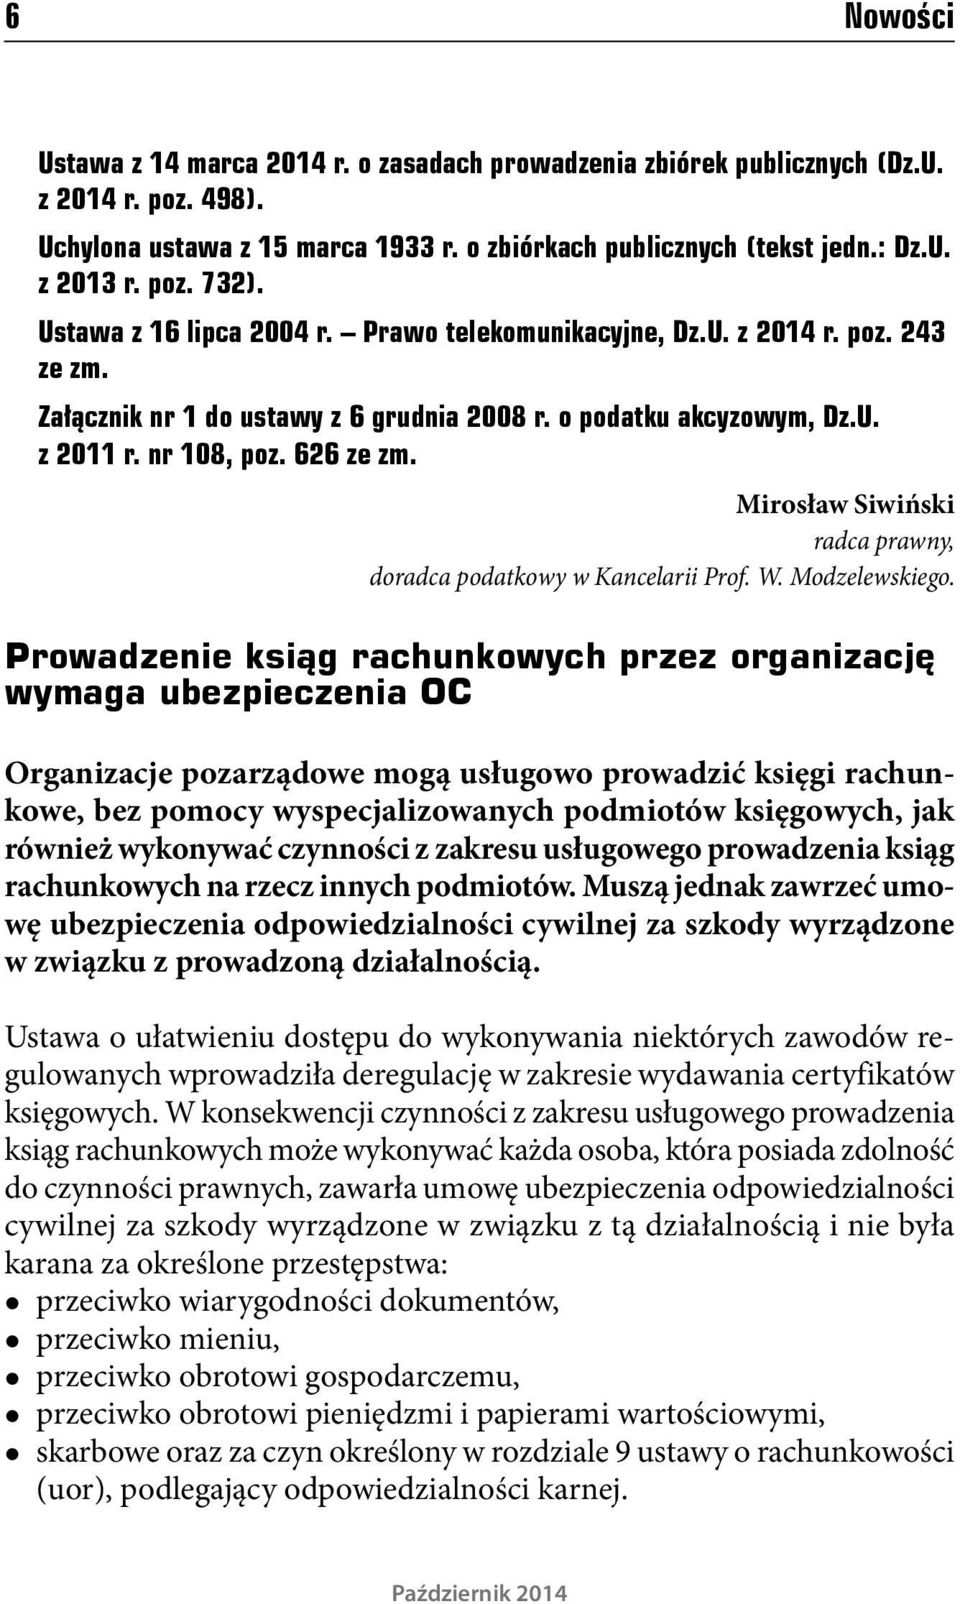 Mirosław Siwiński radca prawny, doradca podatkowy w Kancelarii Prof. W. Modzelewskiego.